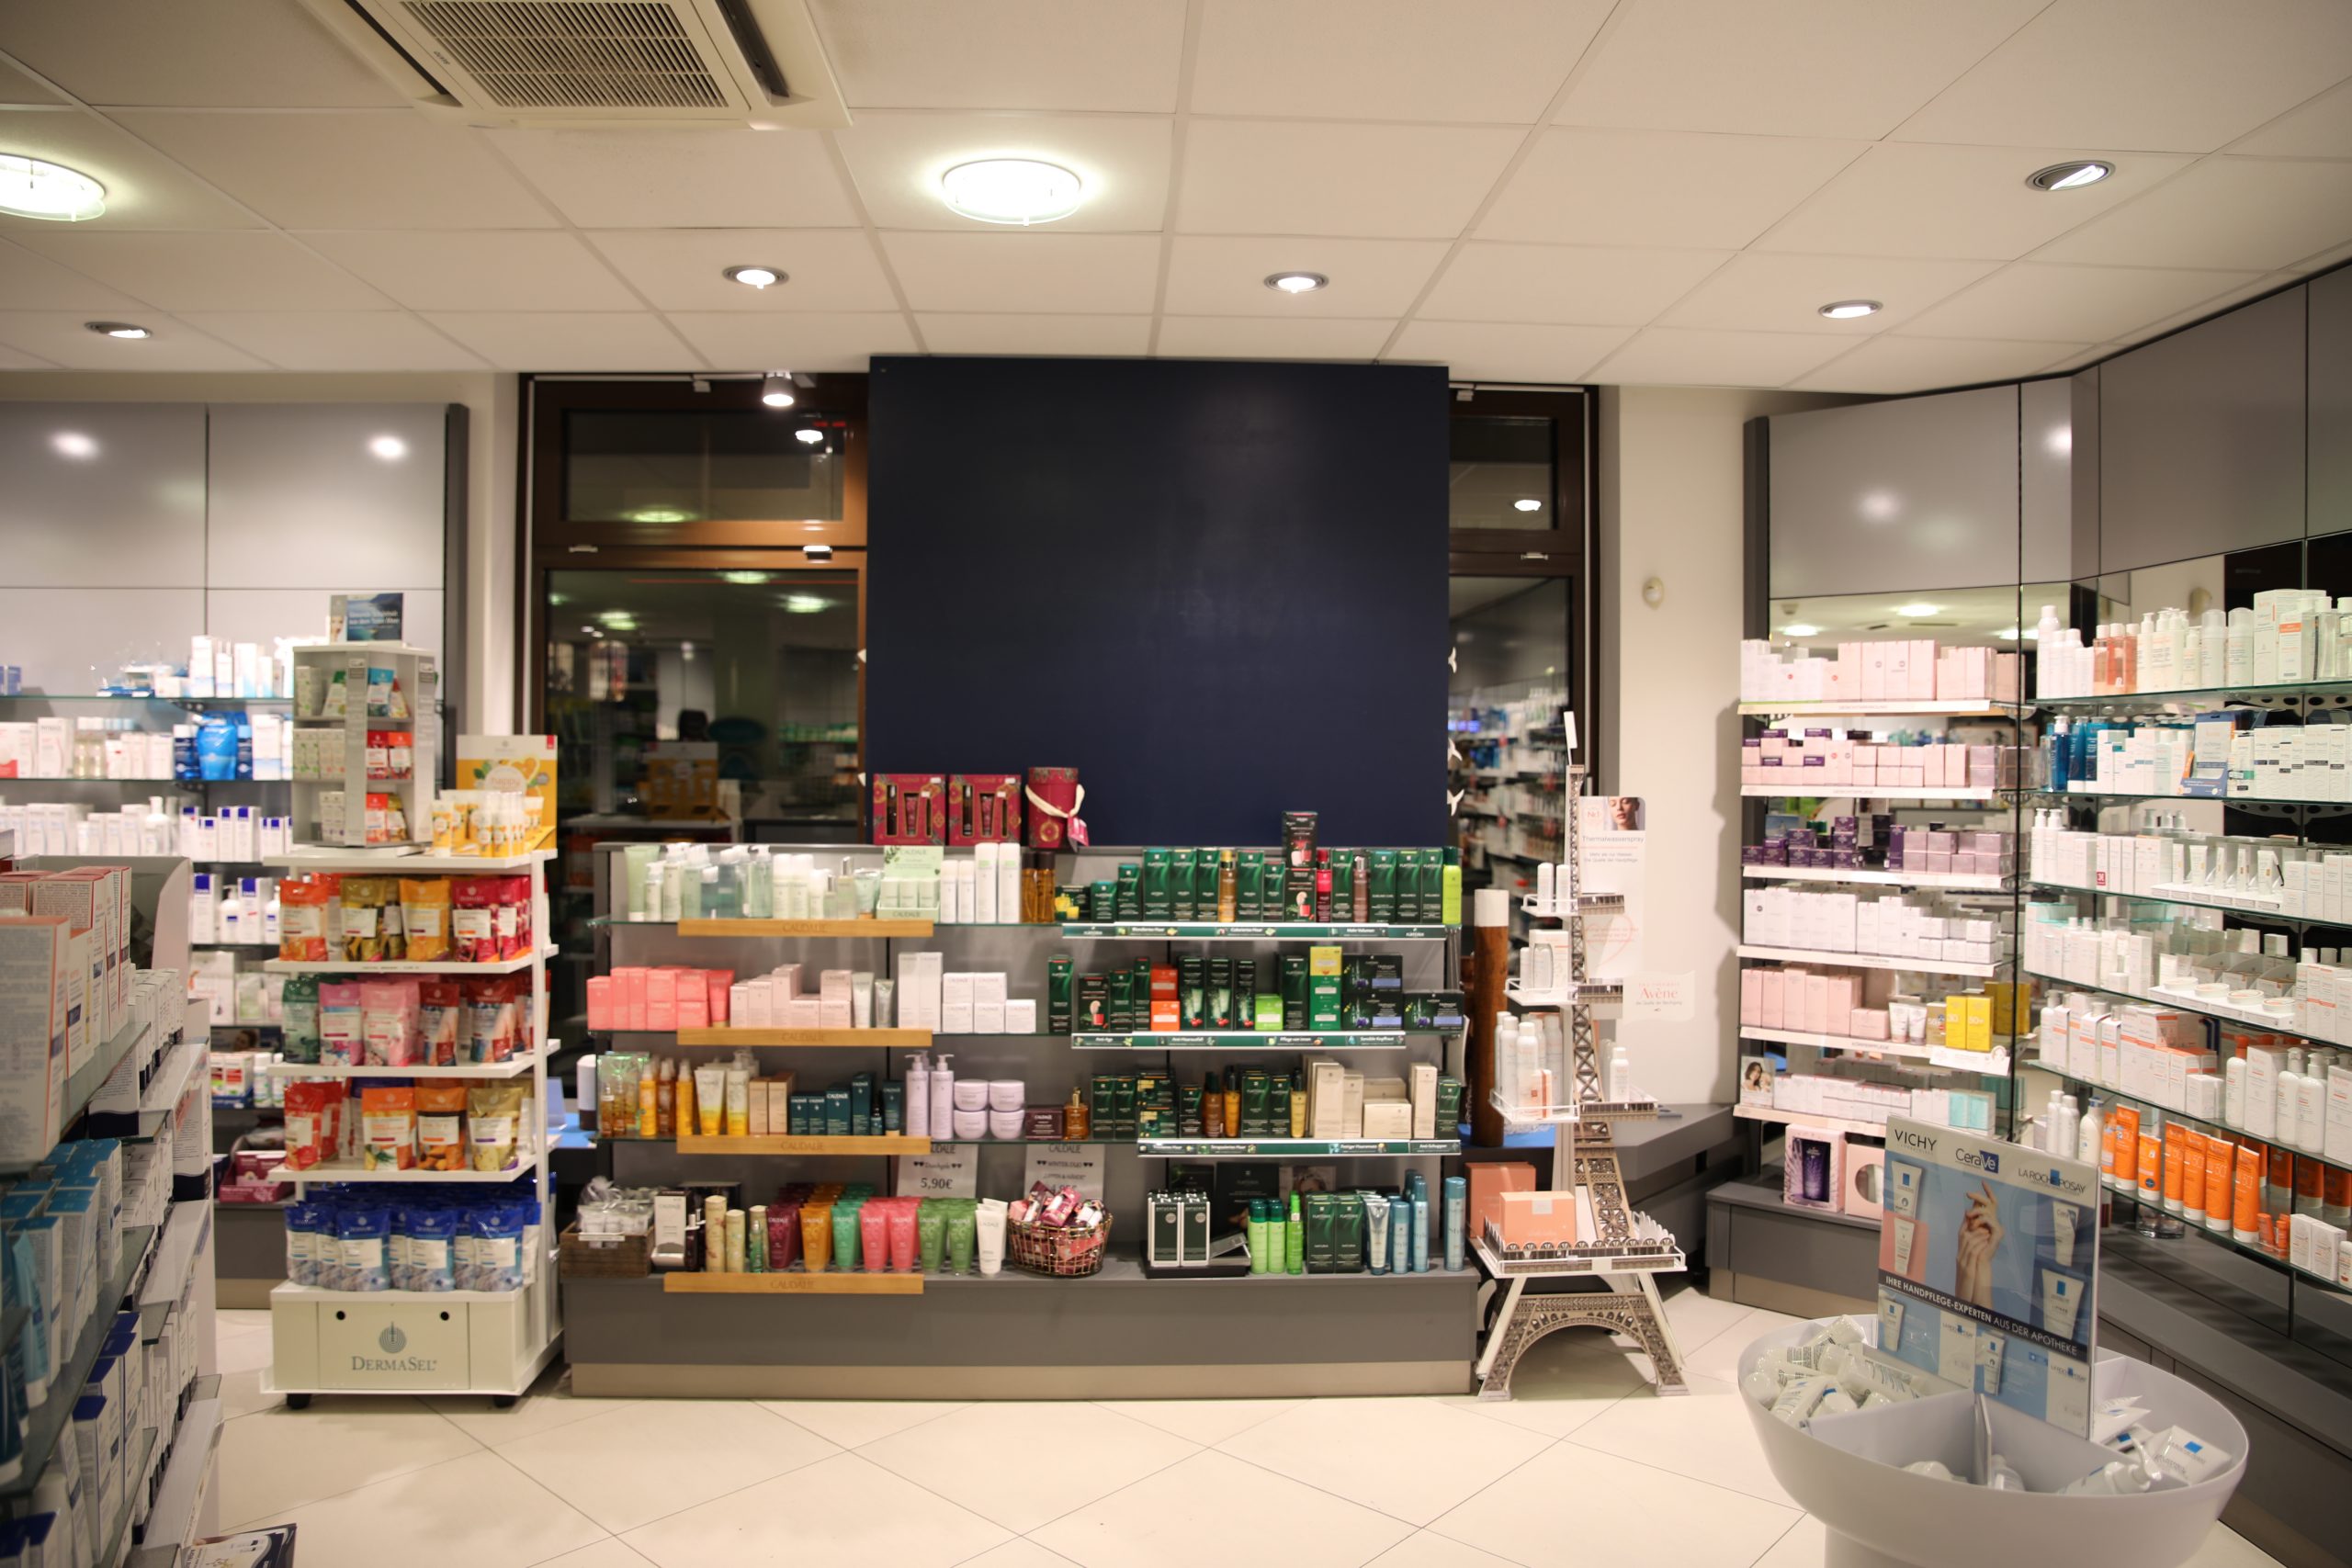 Zu sehen sind Kosmetik-Produkte und Hygieneartikel in der Apotheke am Schlachtensee mit langen Öffnungszeiten